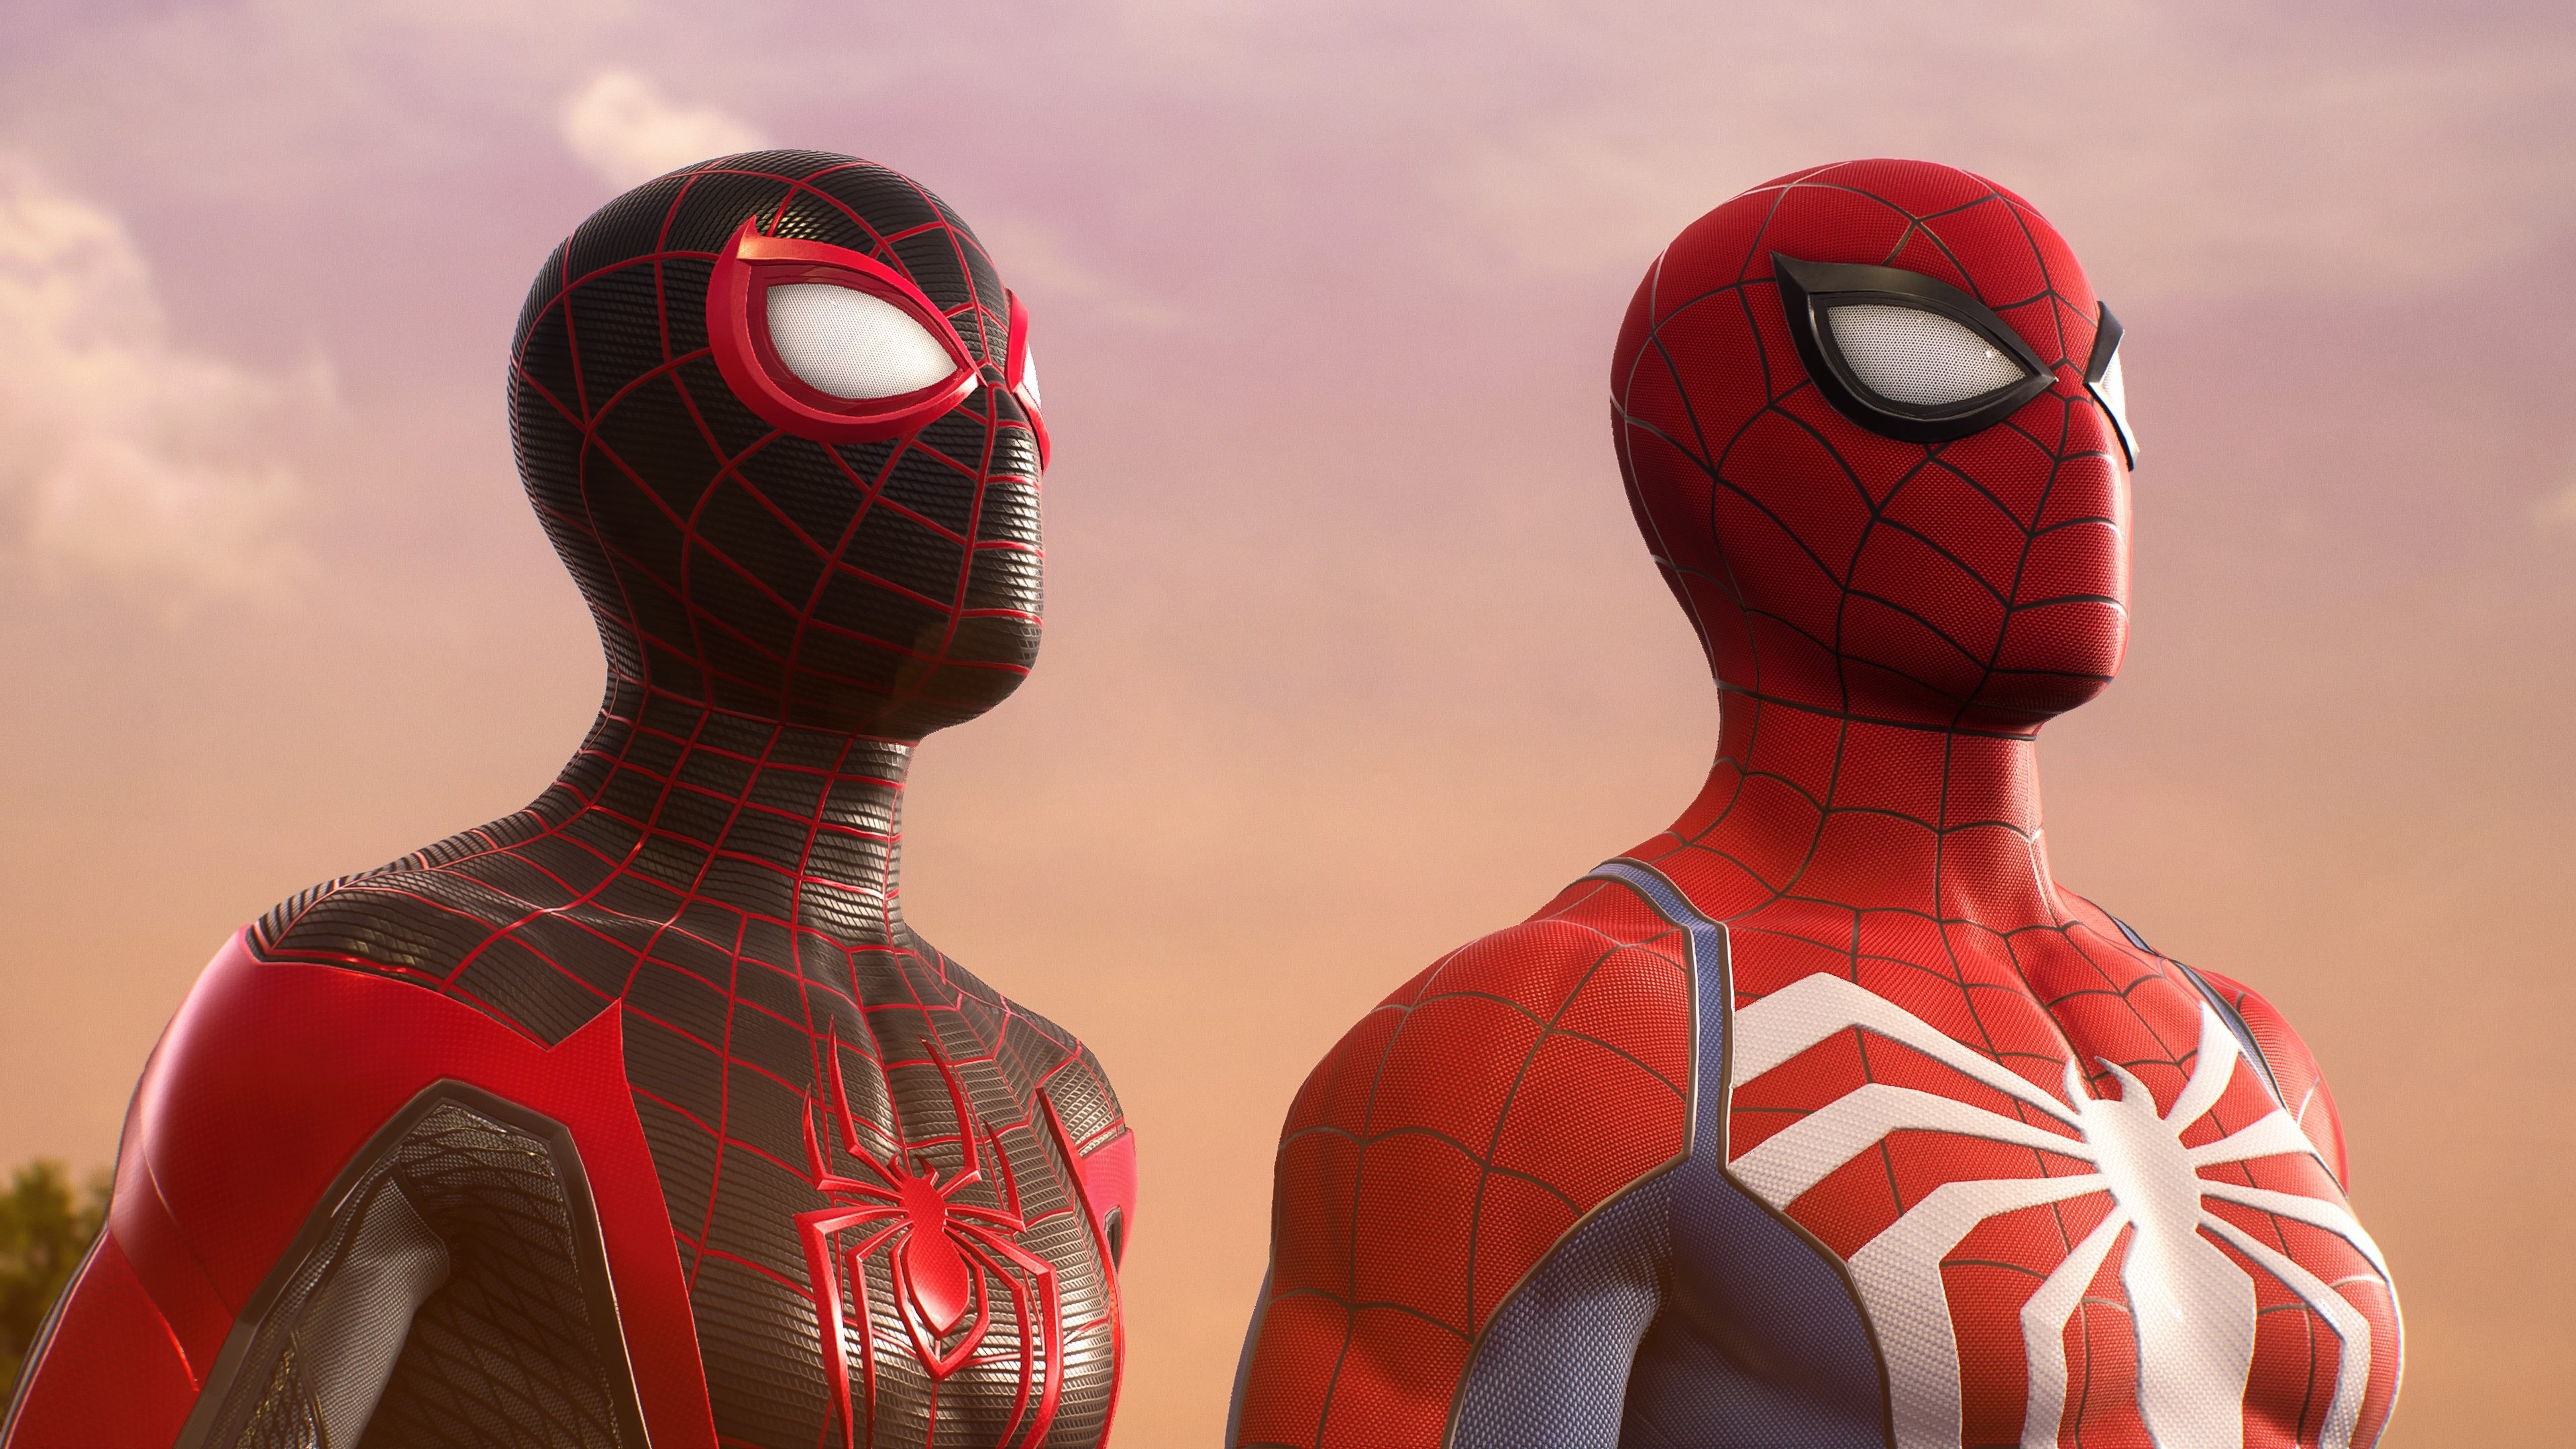 
          Как открыть все костюмы в Marvel's Spider-Man 2 — как разблокировать стили и получить детали
        